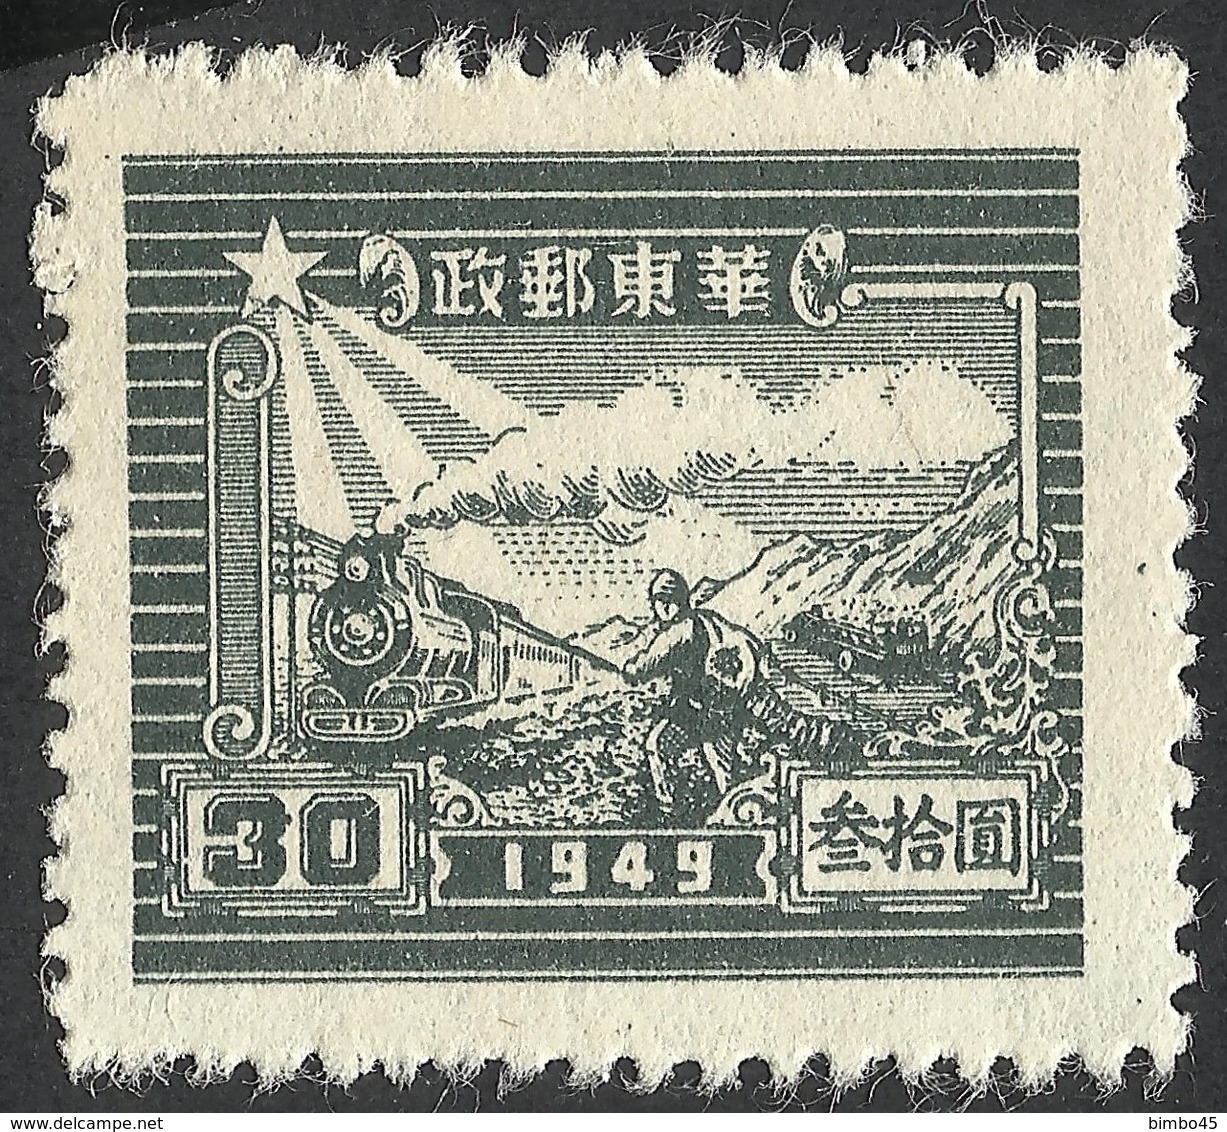 ERROR--EAST CHINA -TRAIN-1949--PERFECT STAMP - Abarten Und Kuriositäten